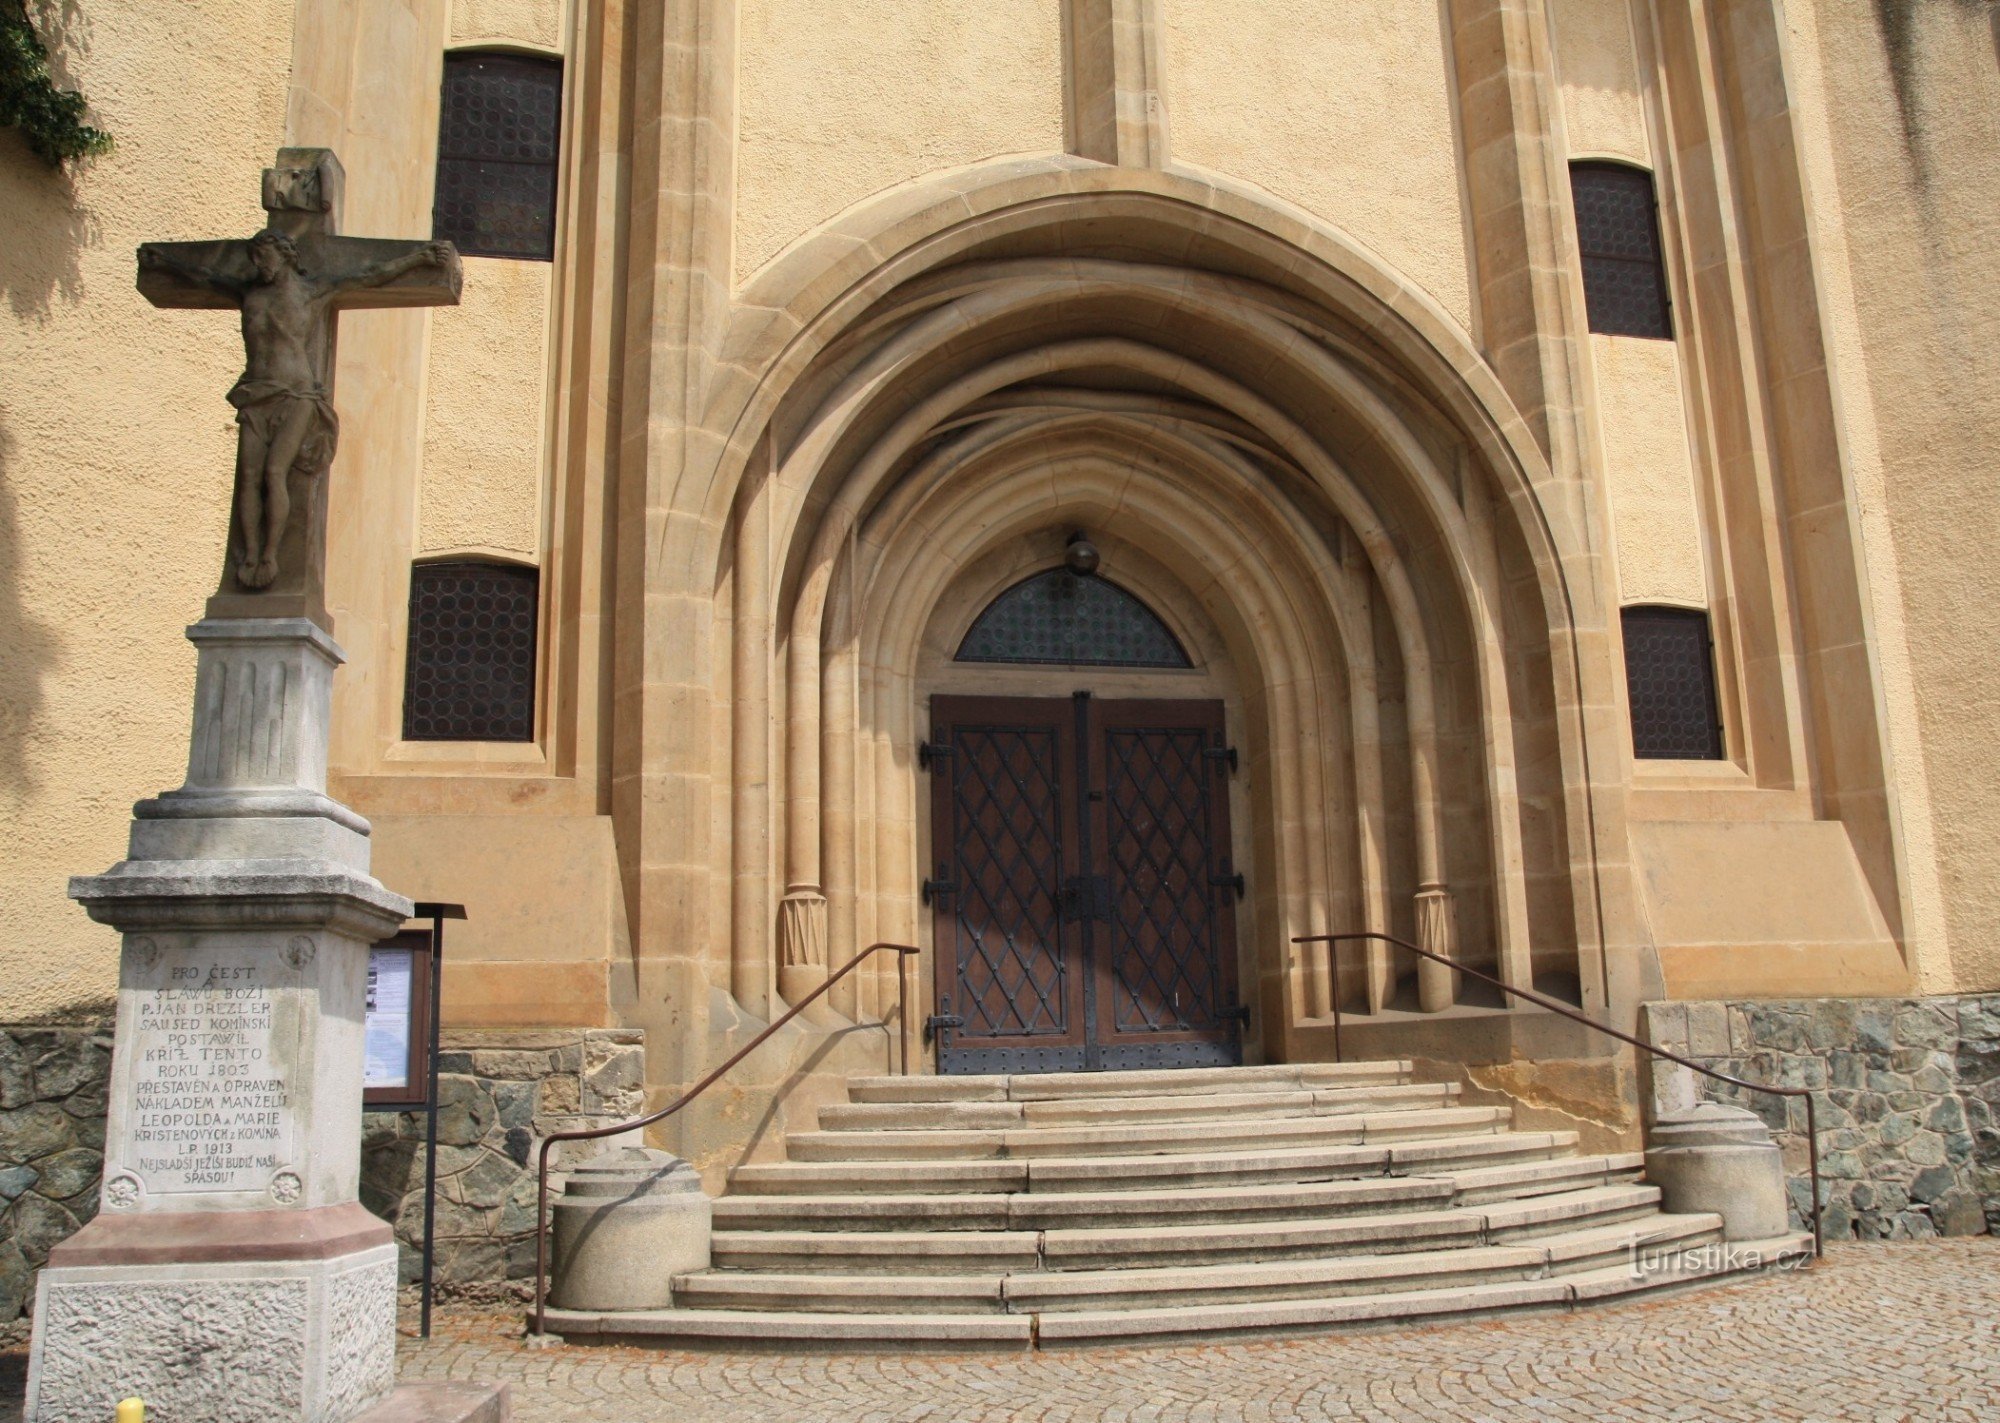 Portalul de intrare în biserică